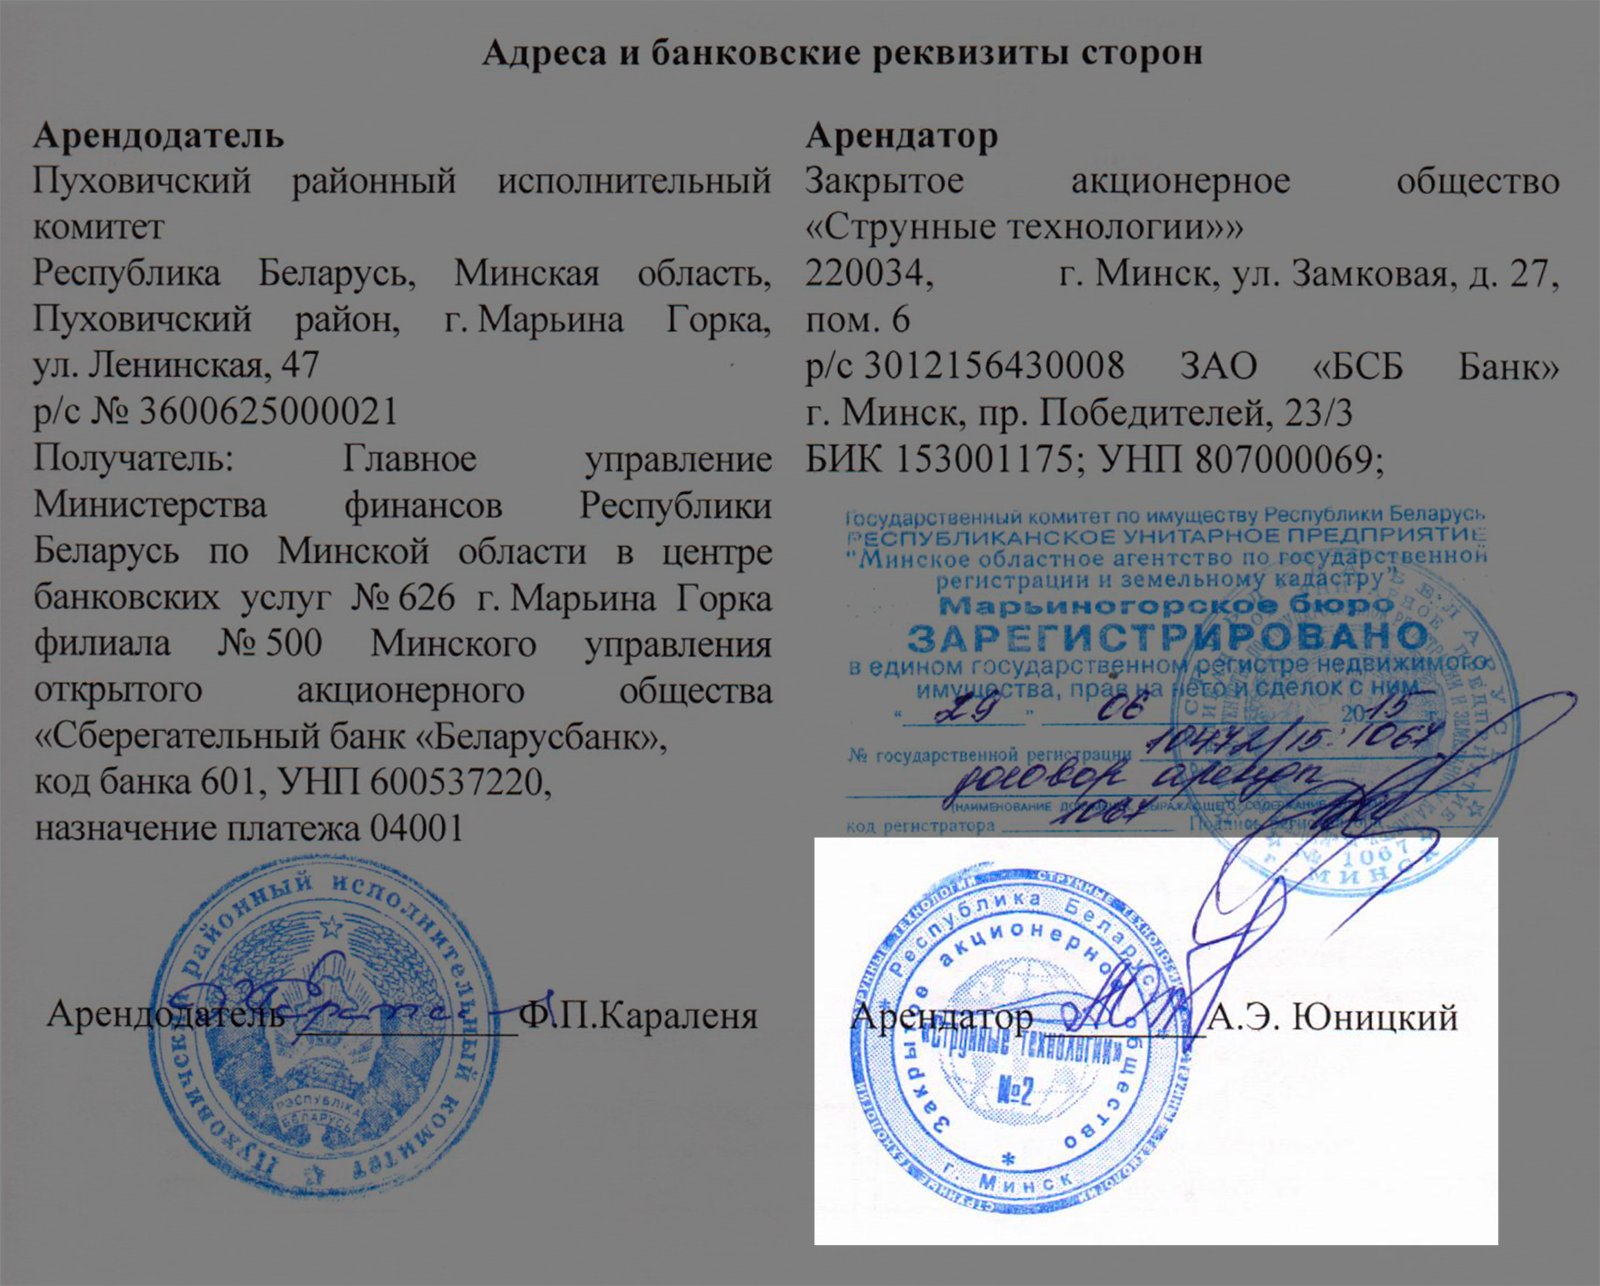 Договор аренды подписал Юницкий, а компания зарегистрирована на Косареву. Так кто на самом деле руководит ЗАО «Струнные технологии»?